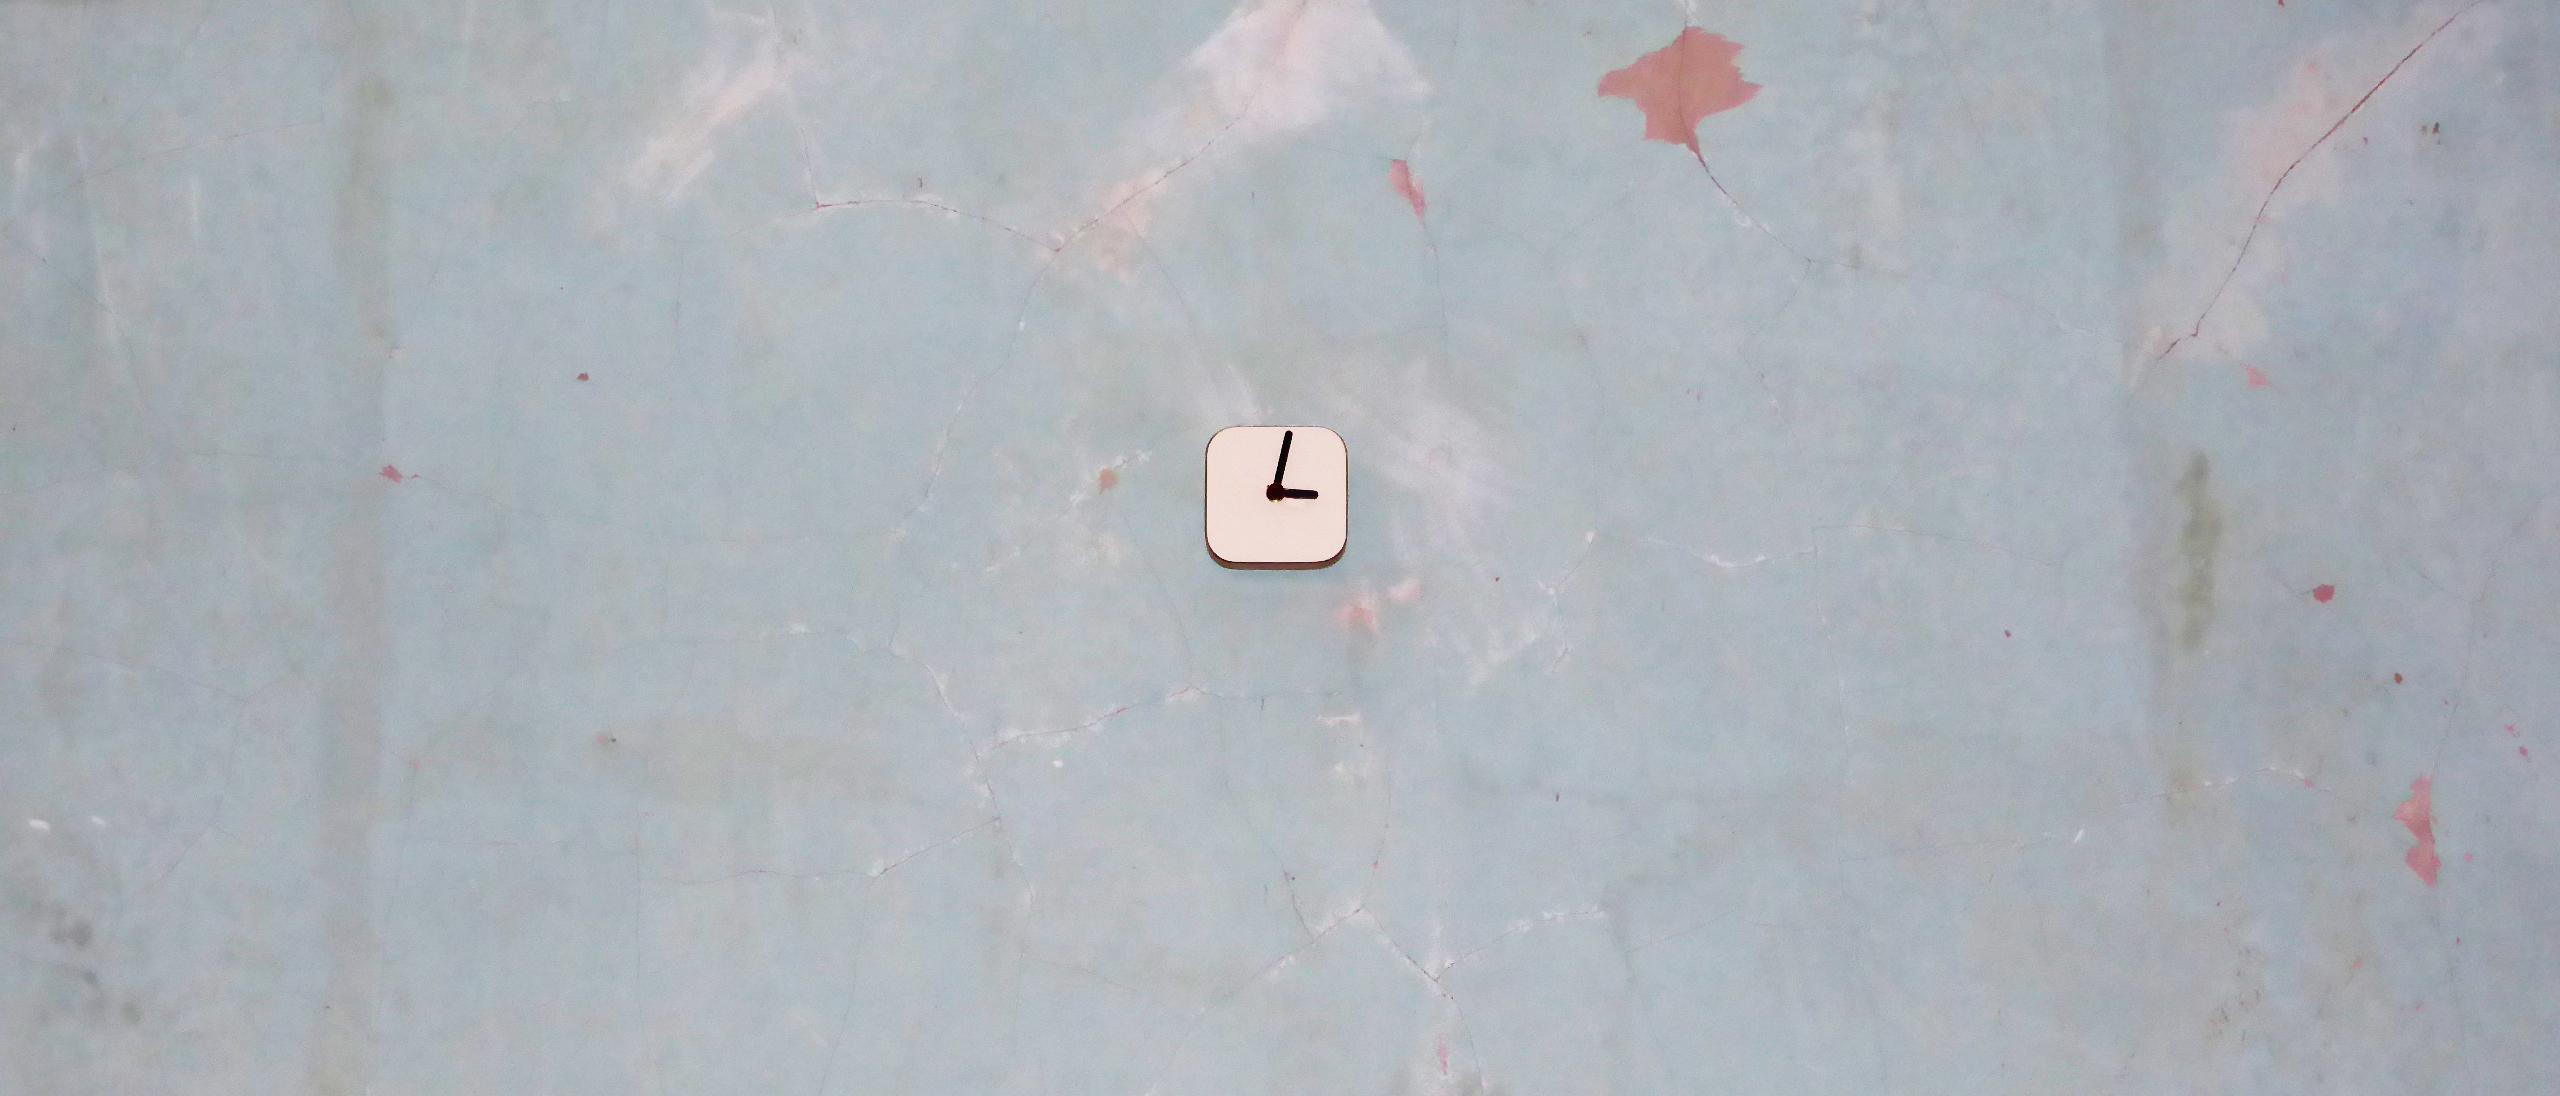 WEAMO Small Wall Clock - Clotted Cream White 01